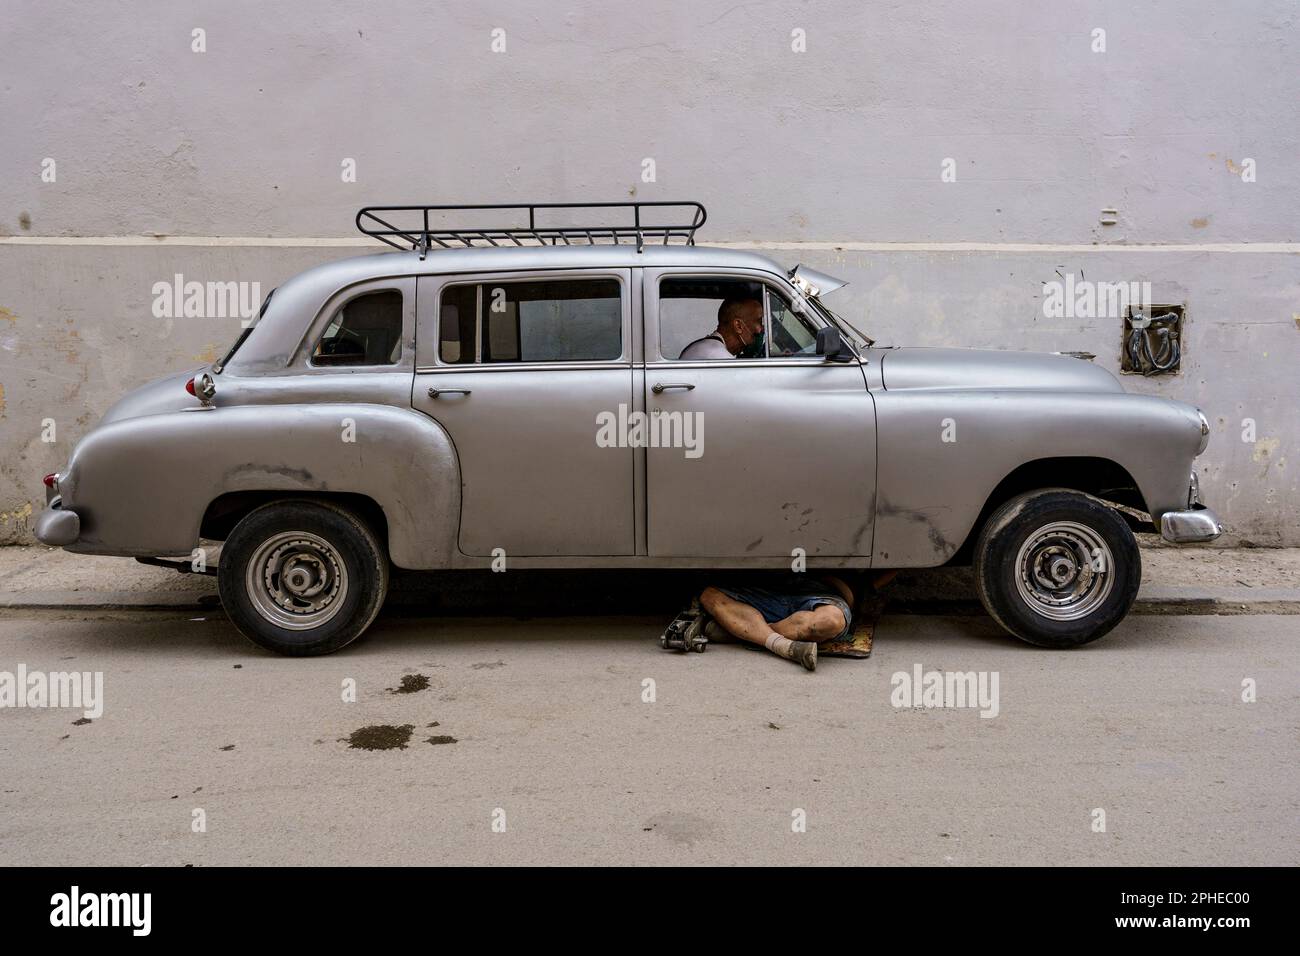 Car repair in Habana, Cuba Stock Photo